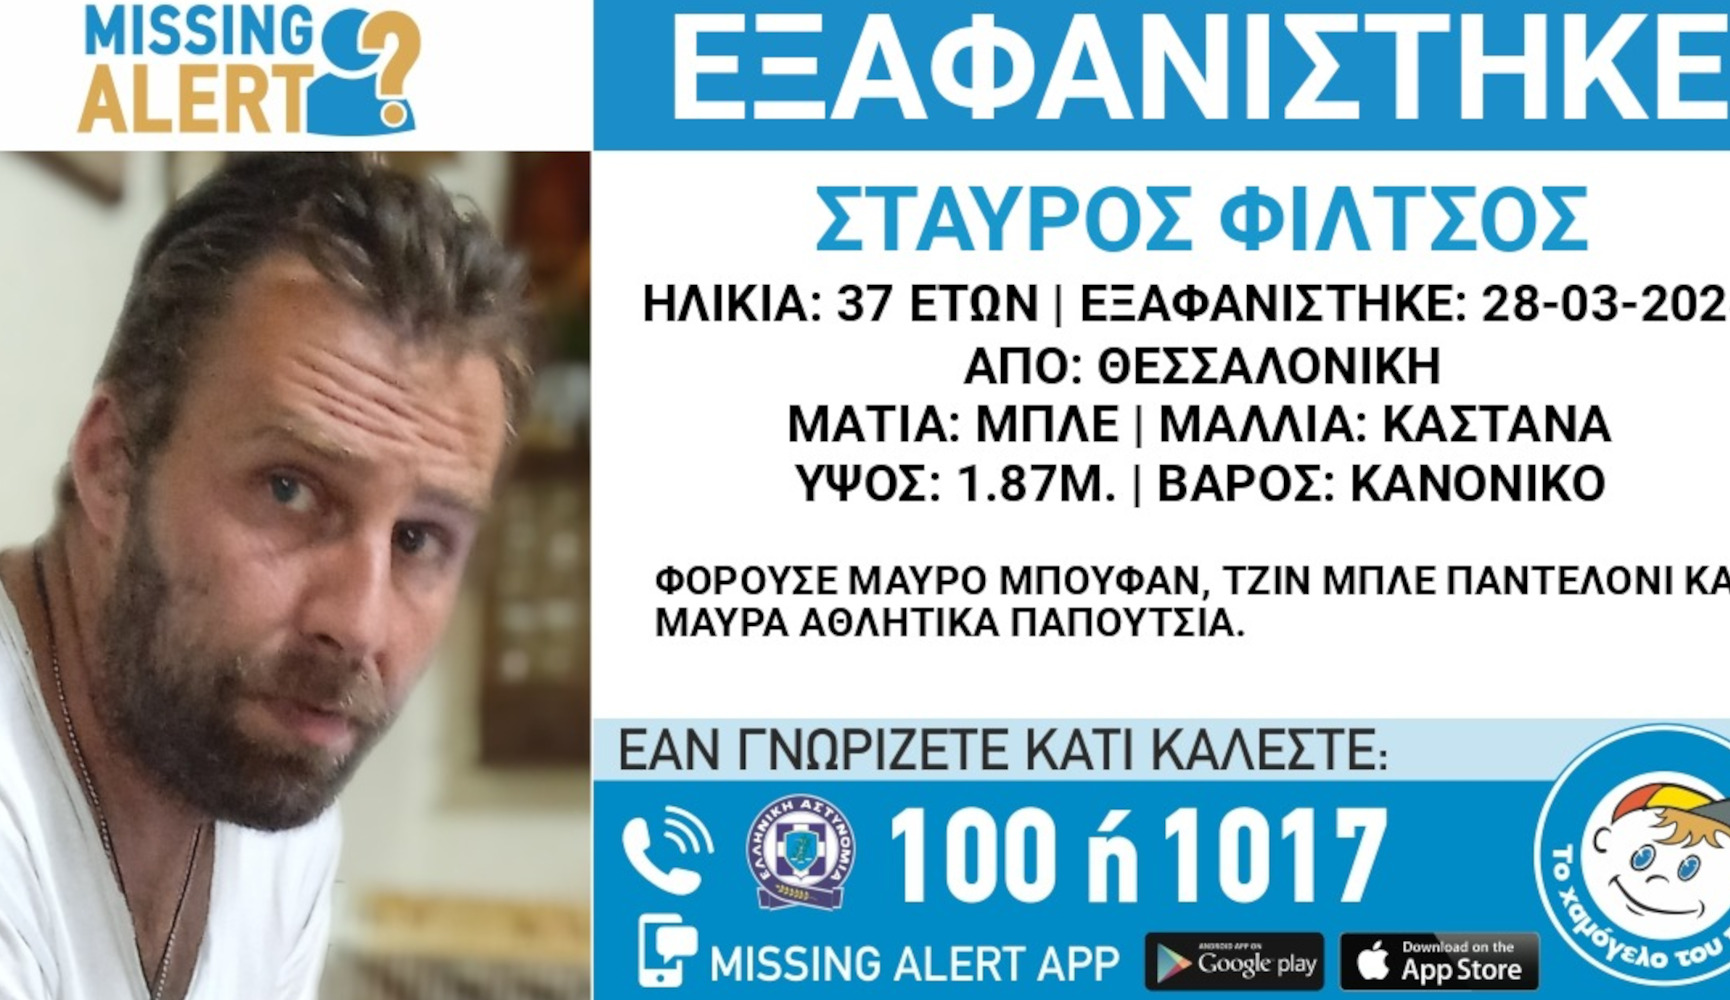 Θεσσαλονίκη: Συναγερμός για την εξαφάνιση 37χρονου – Εκδόθηκε Missing Alert